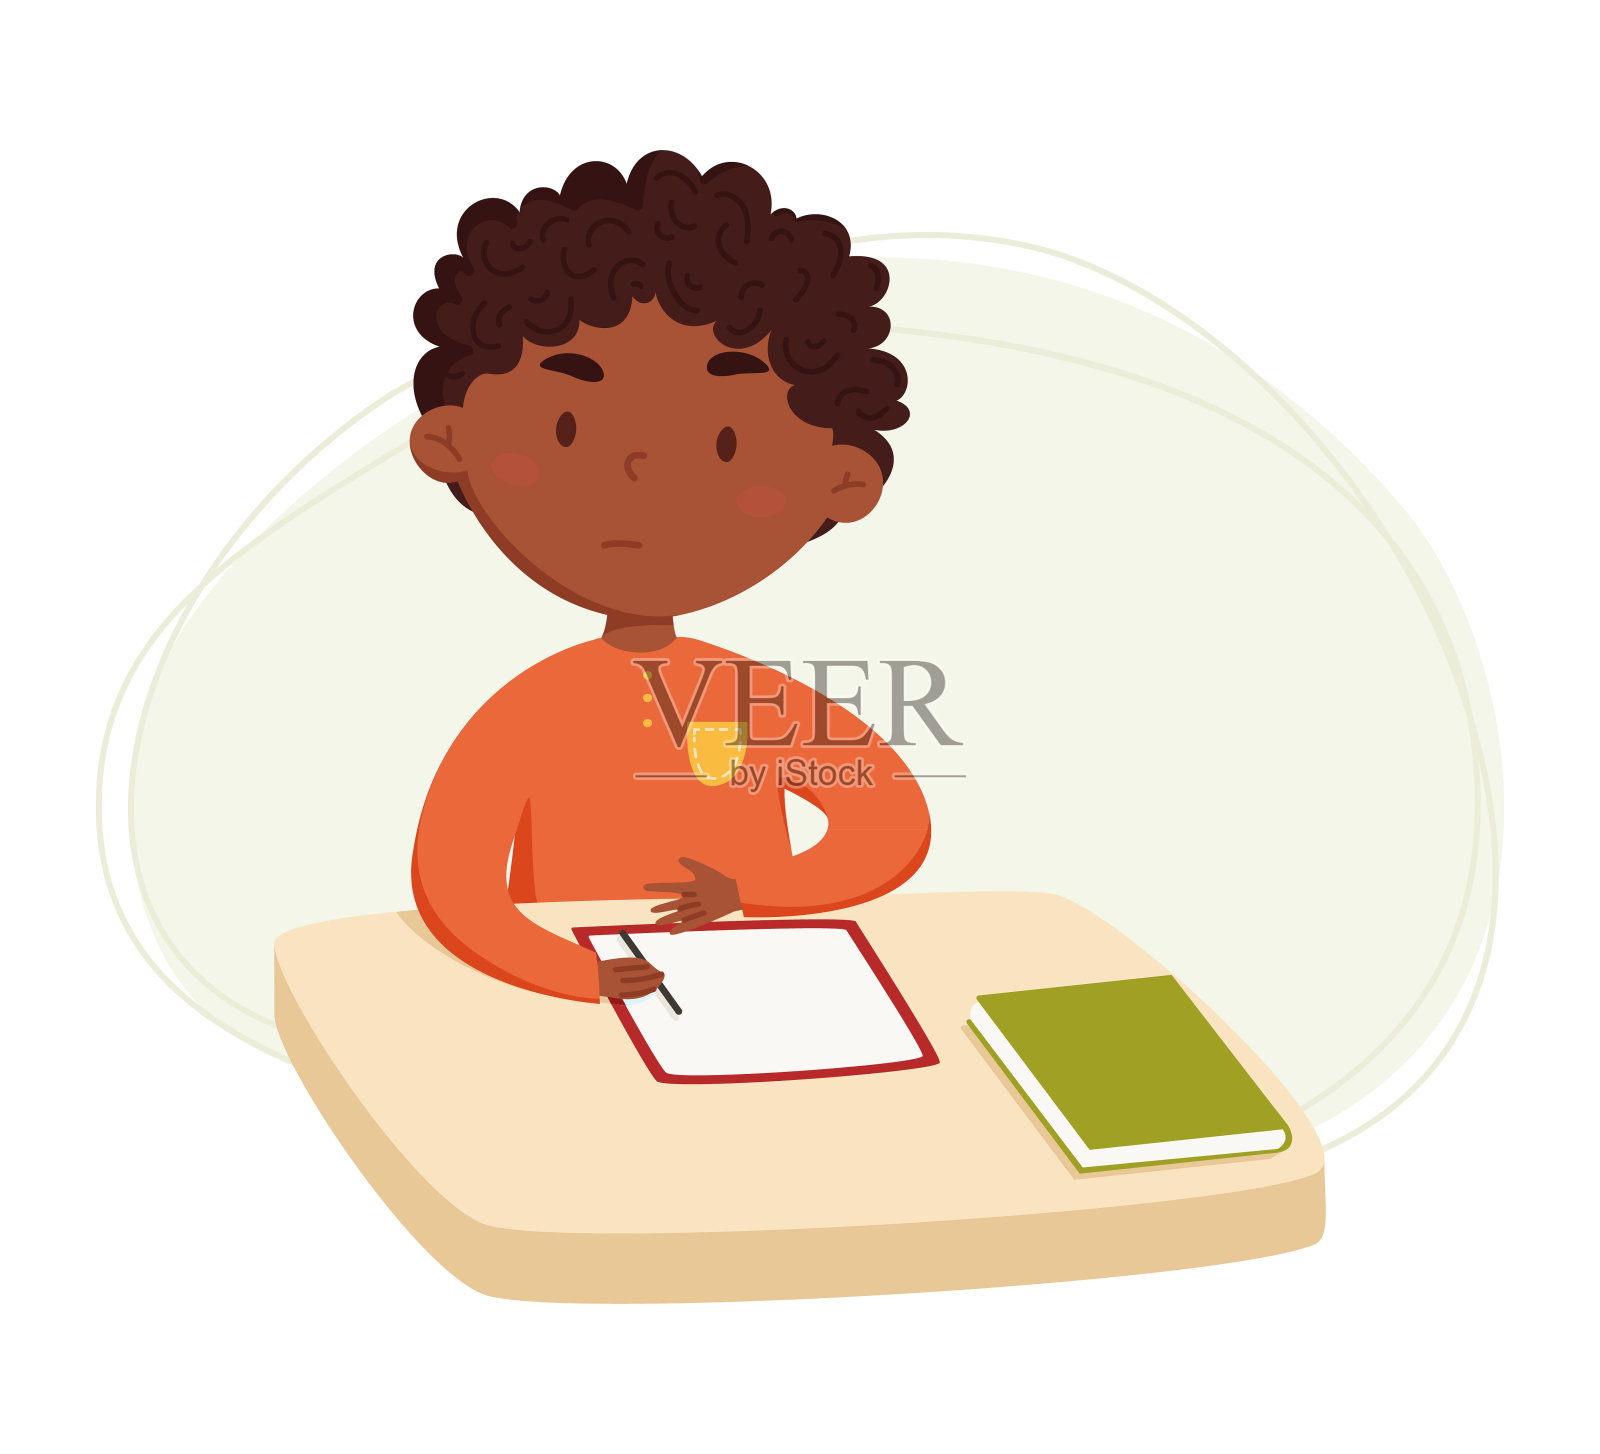 在家做家庭作业的黑人男孩 库存照片. 图片 包括有 笔记本, 大使, 浓度, 少许, 知识, 了解, 项目 - 200626800